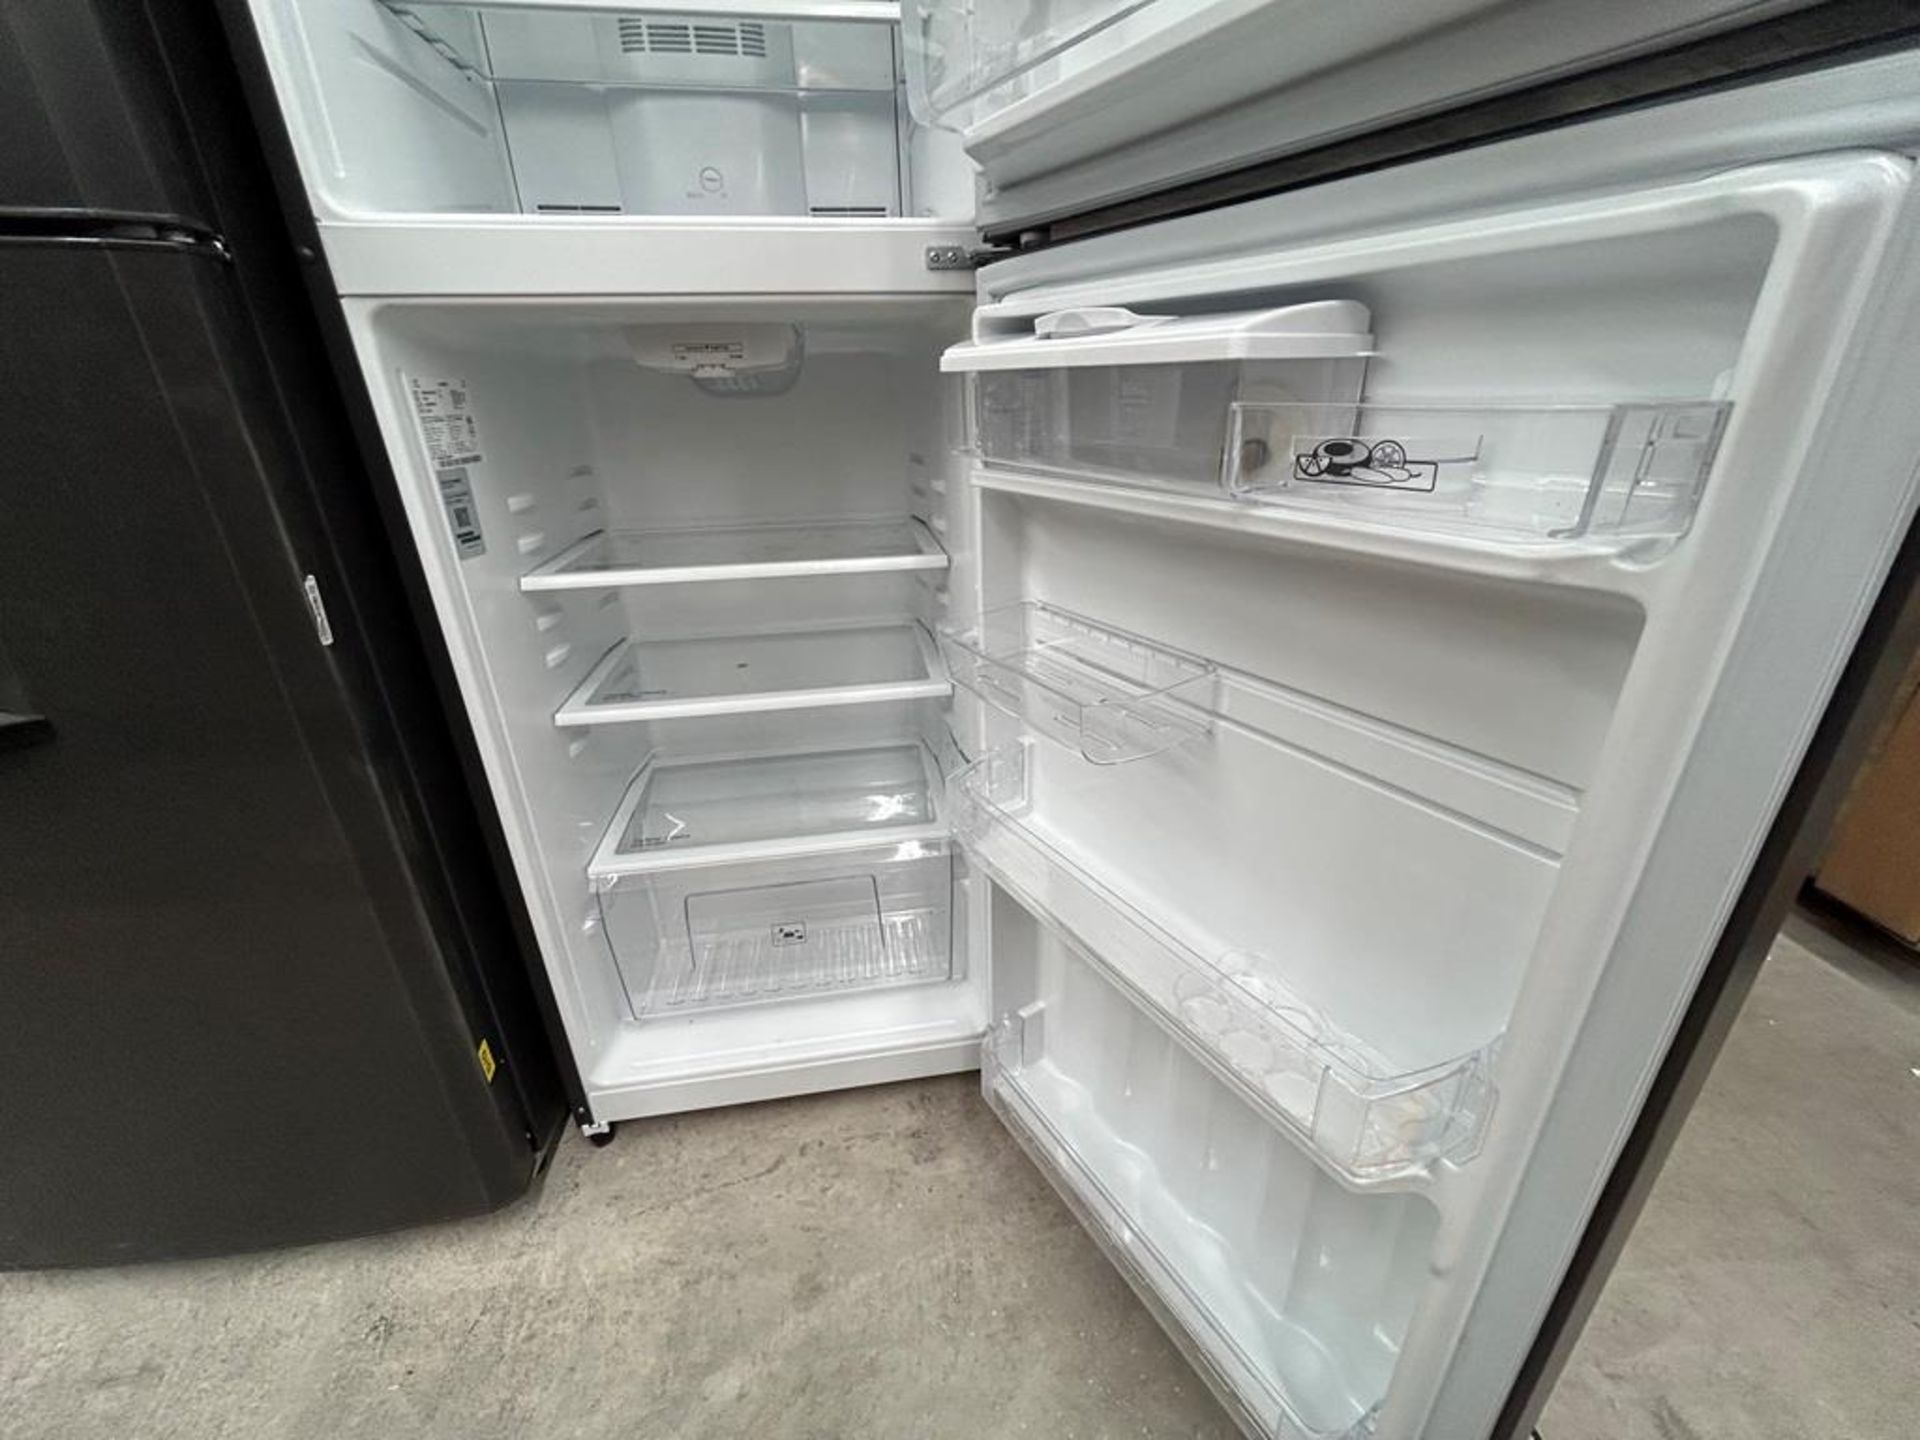 Lote de 2 refrigeradores contiene: 1 Refrigerador con dispensador de agua Marca MABE, Modelo RME360 - Image 11 of 16